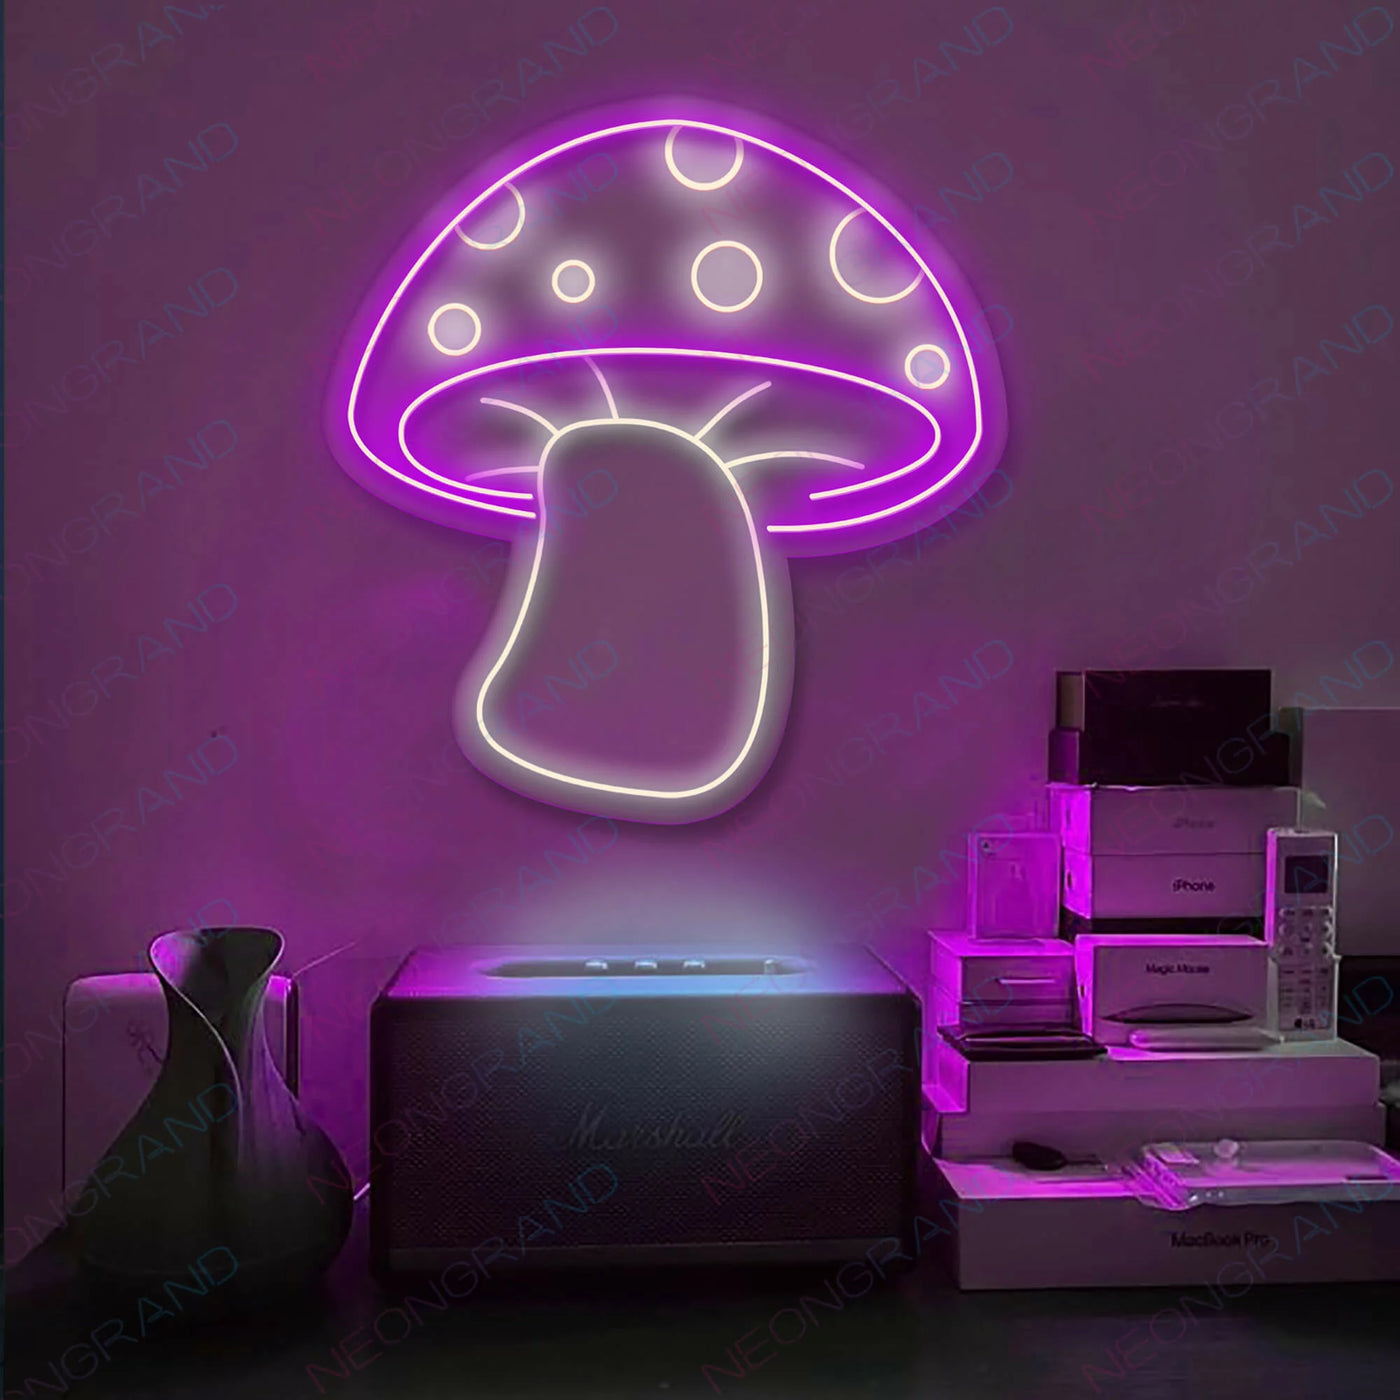 Aesthetic Mushroom Neon Sign Led Light Purple